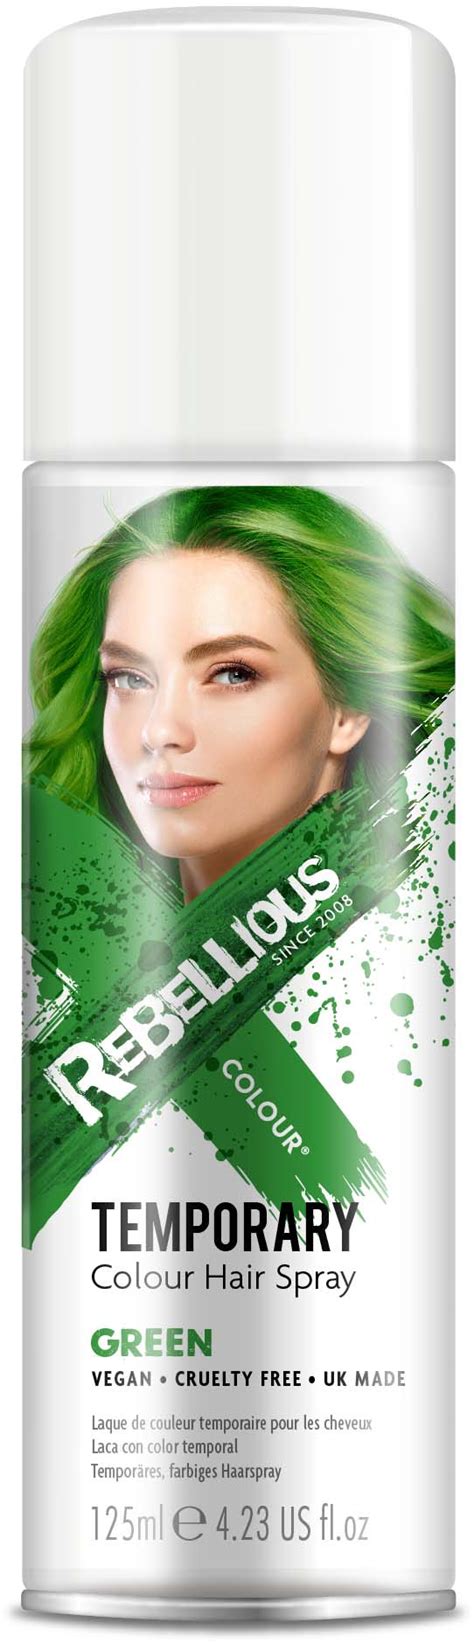 Rebellious Colour Hair Spray Green | lyko.com